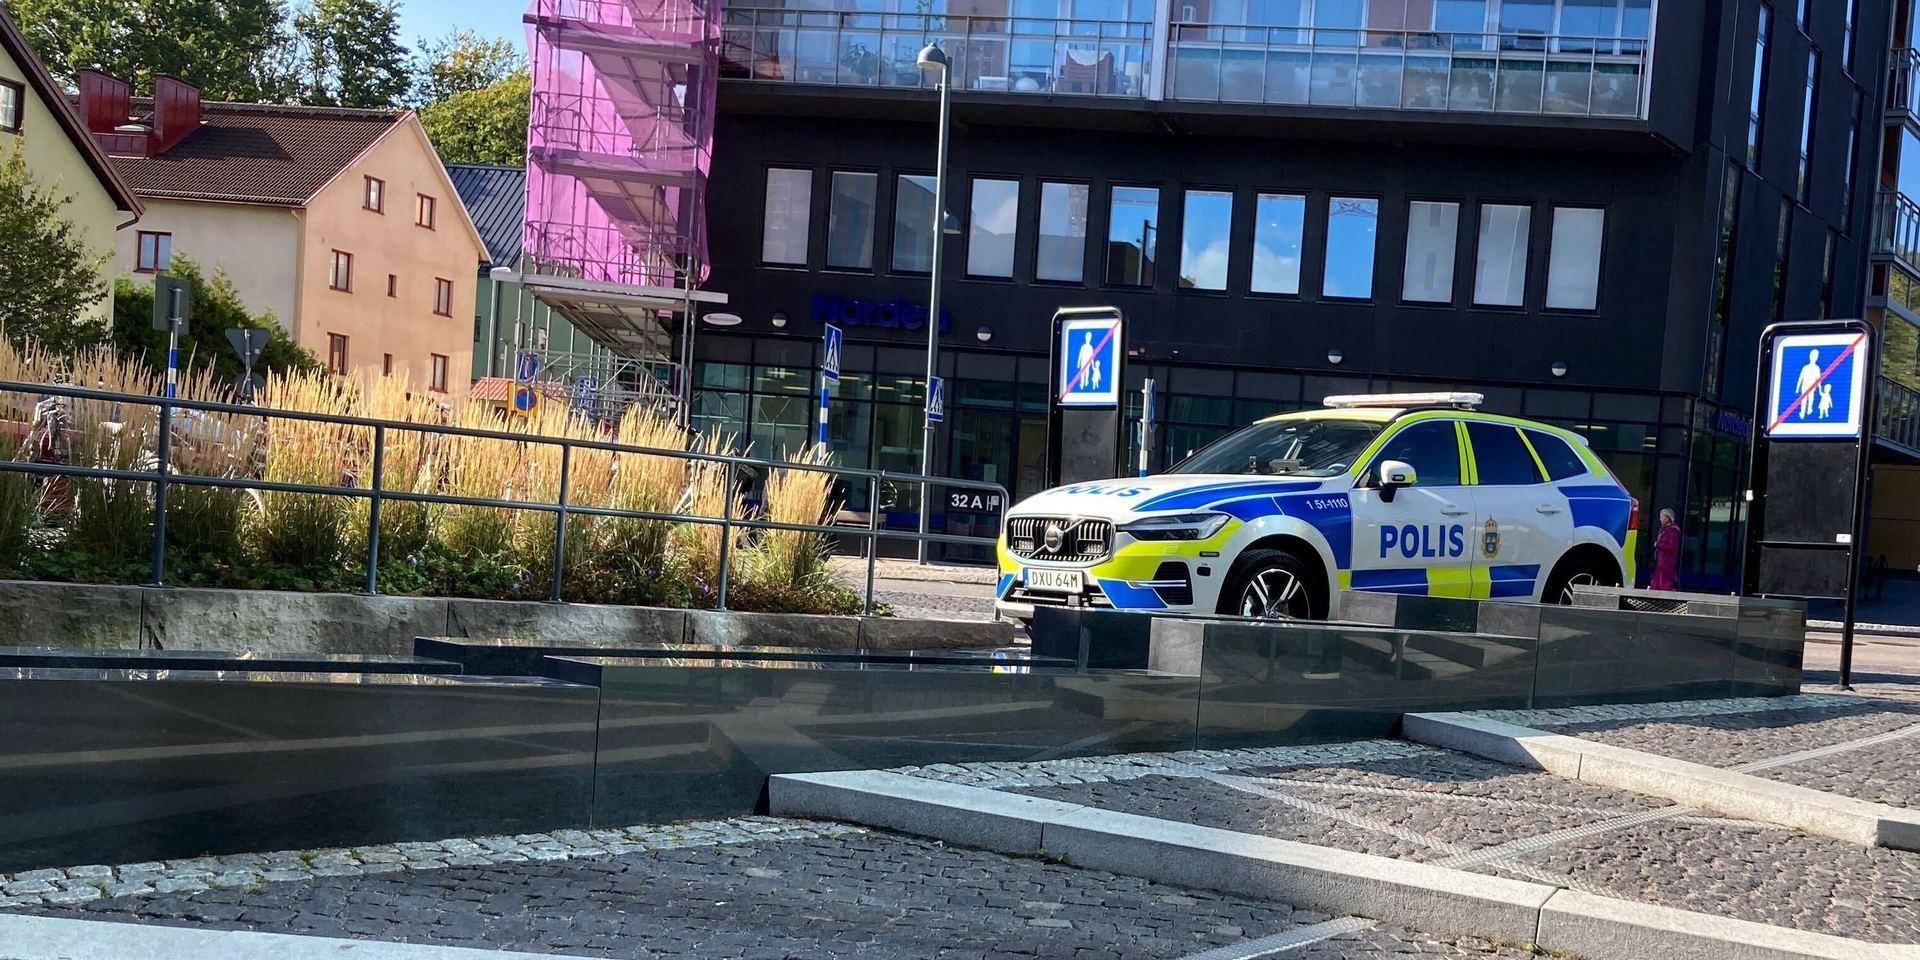 Olyckan inträffade på Storgatan vid elvatiden på fredagsförmiddagen. 